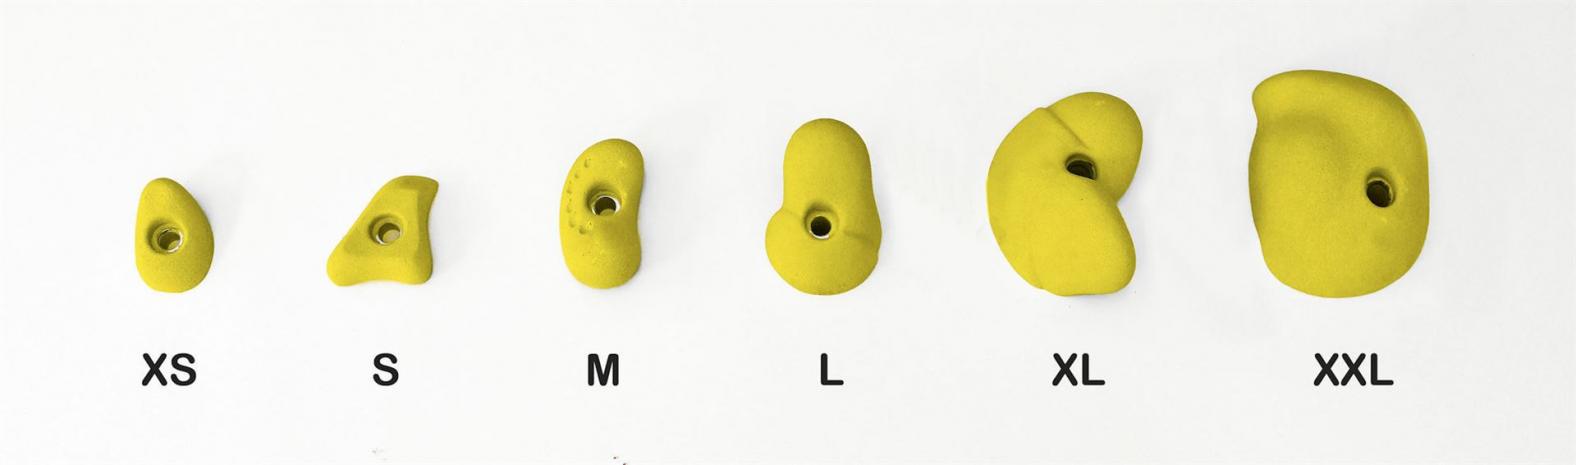 Klettergriffe in der Größe von 6 cm bis 18 cm